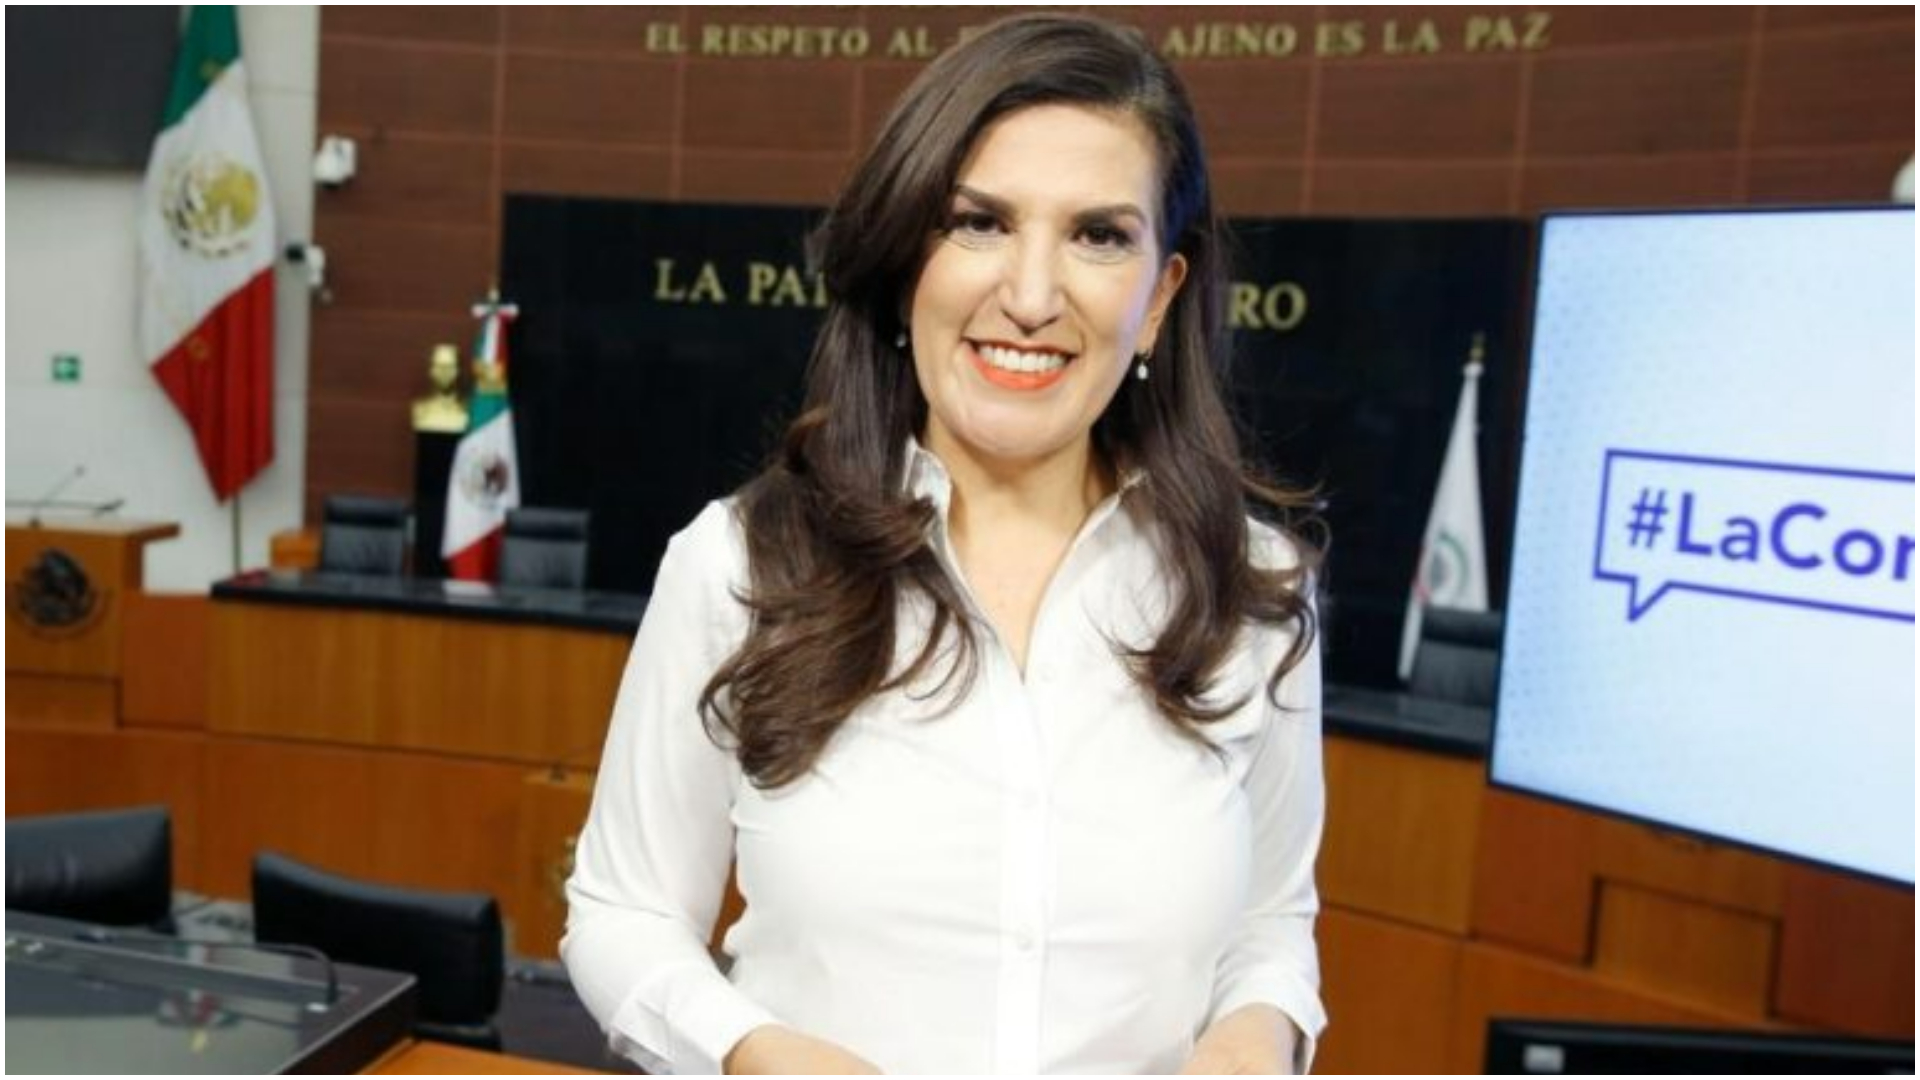 La panista arremetió contra el presidente López Obrador y la candidata de Morena, Delfina Gómez (Senadores del PAN)